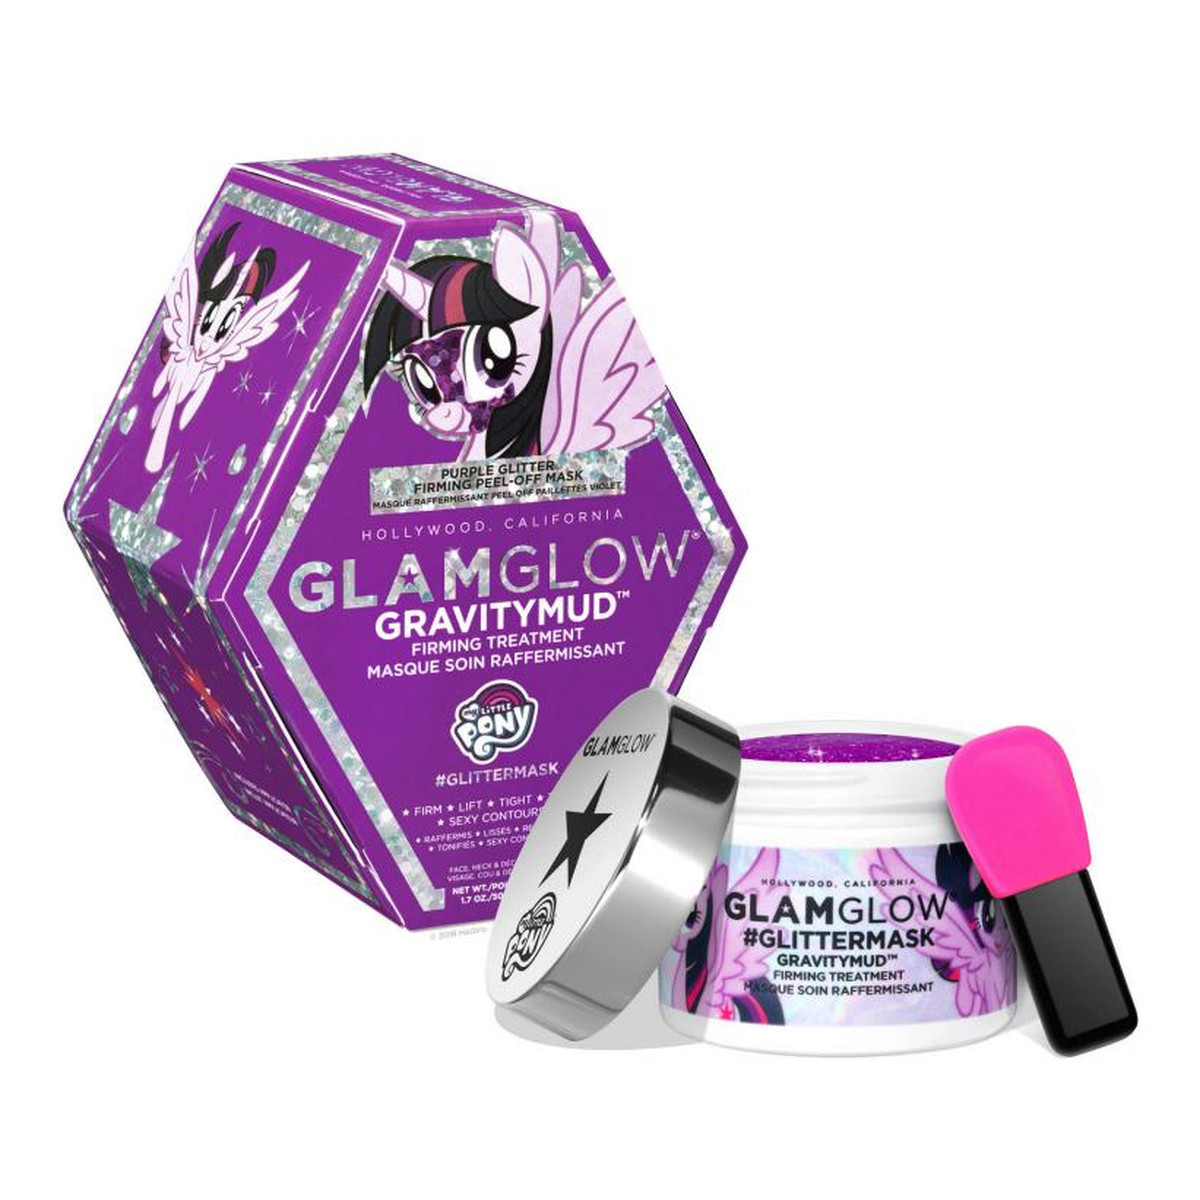 GlamGlow Gravitymud Firming Treatment My Little Pony maseczka ujędrniająca Twilight Sparkle 50g